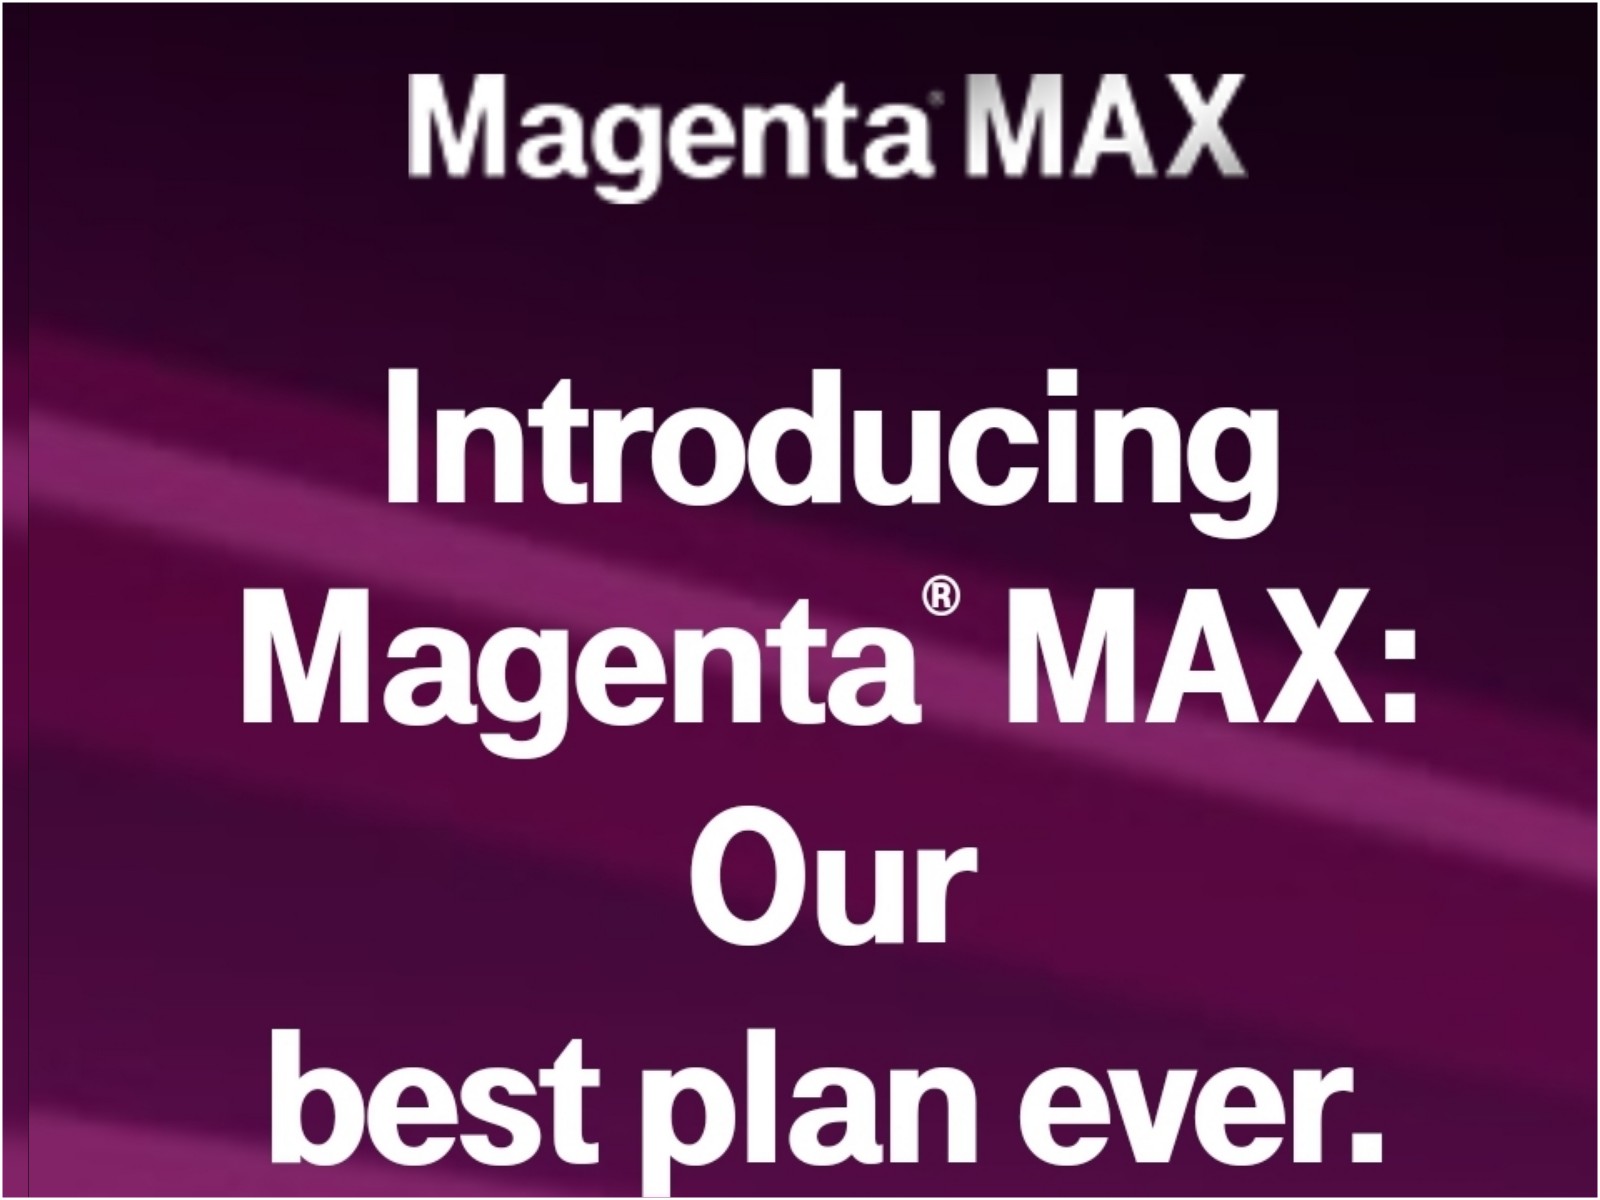 magenta plus vs magenta max intro image